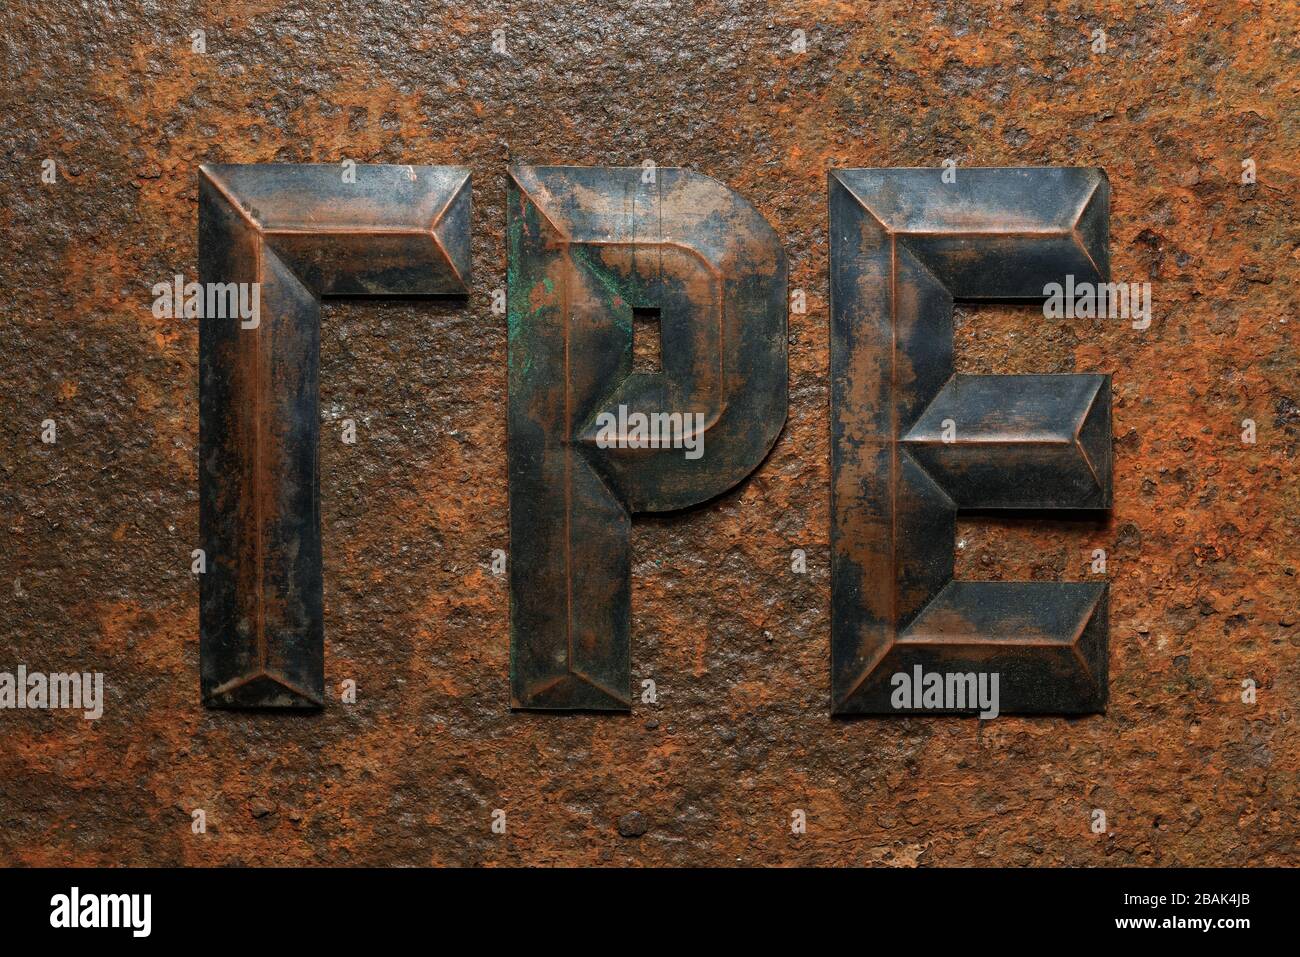 Hintergründe und Texturen: Eine Gruppe von gealterten, geprägten kyrillischen Kupferbuchstaben auf stark korrodierten rostigen Metalloberflächen Stockfoto